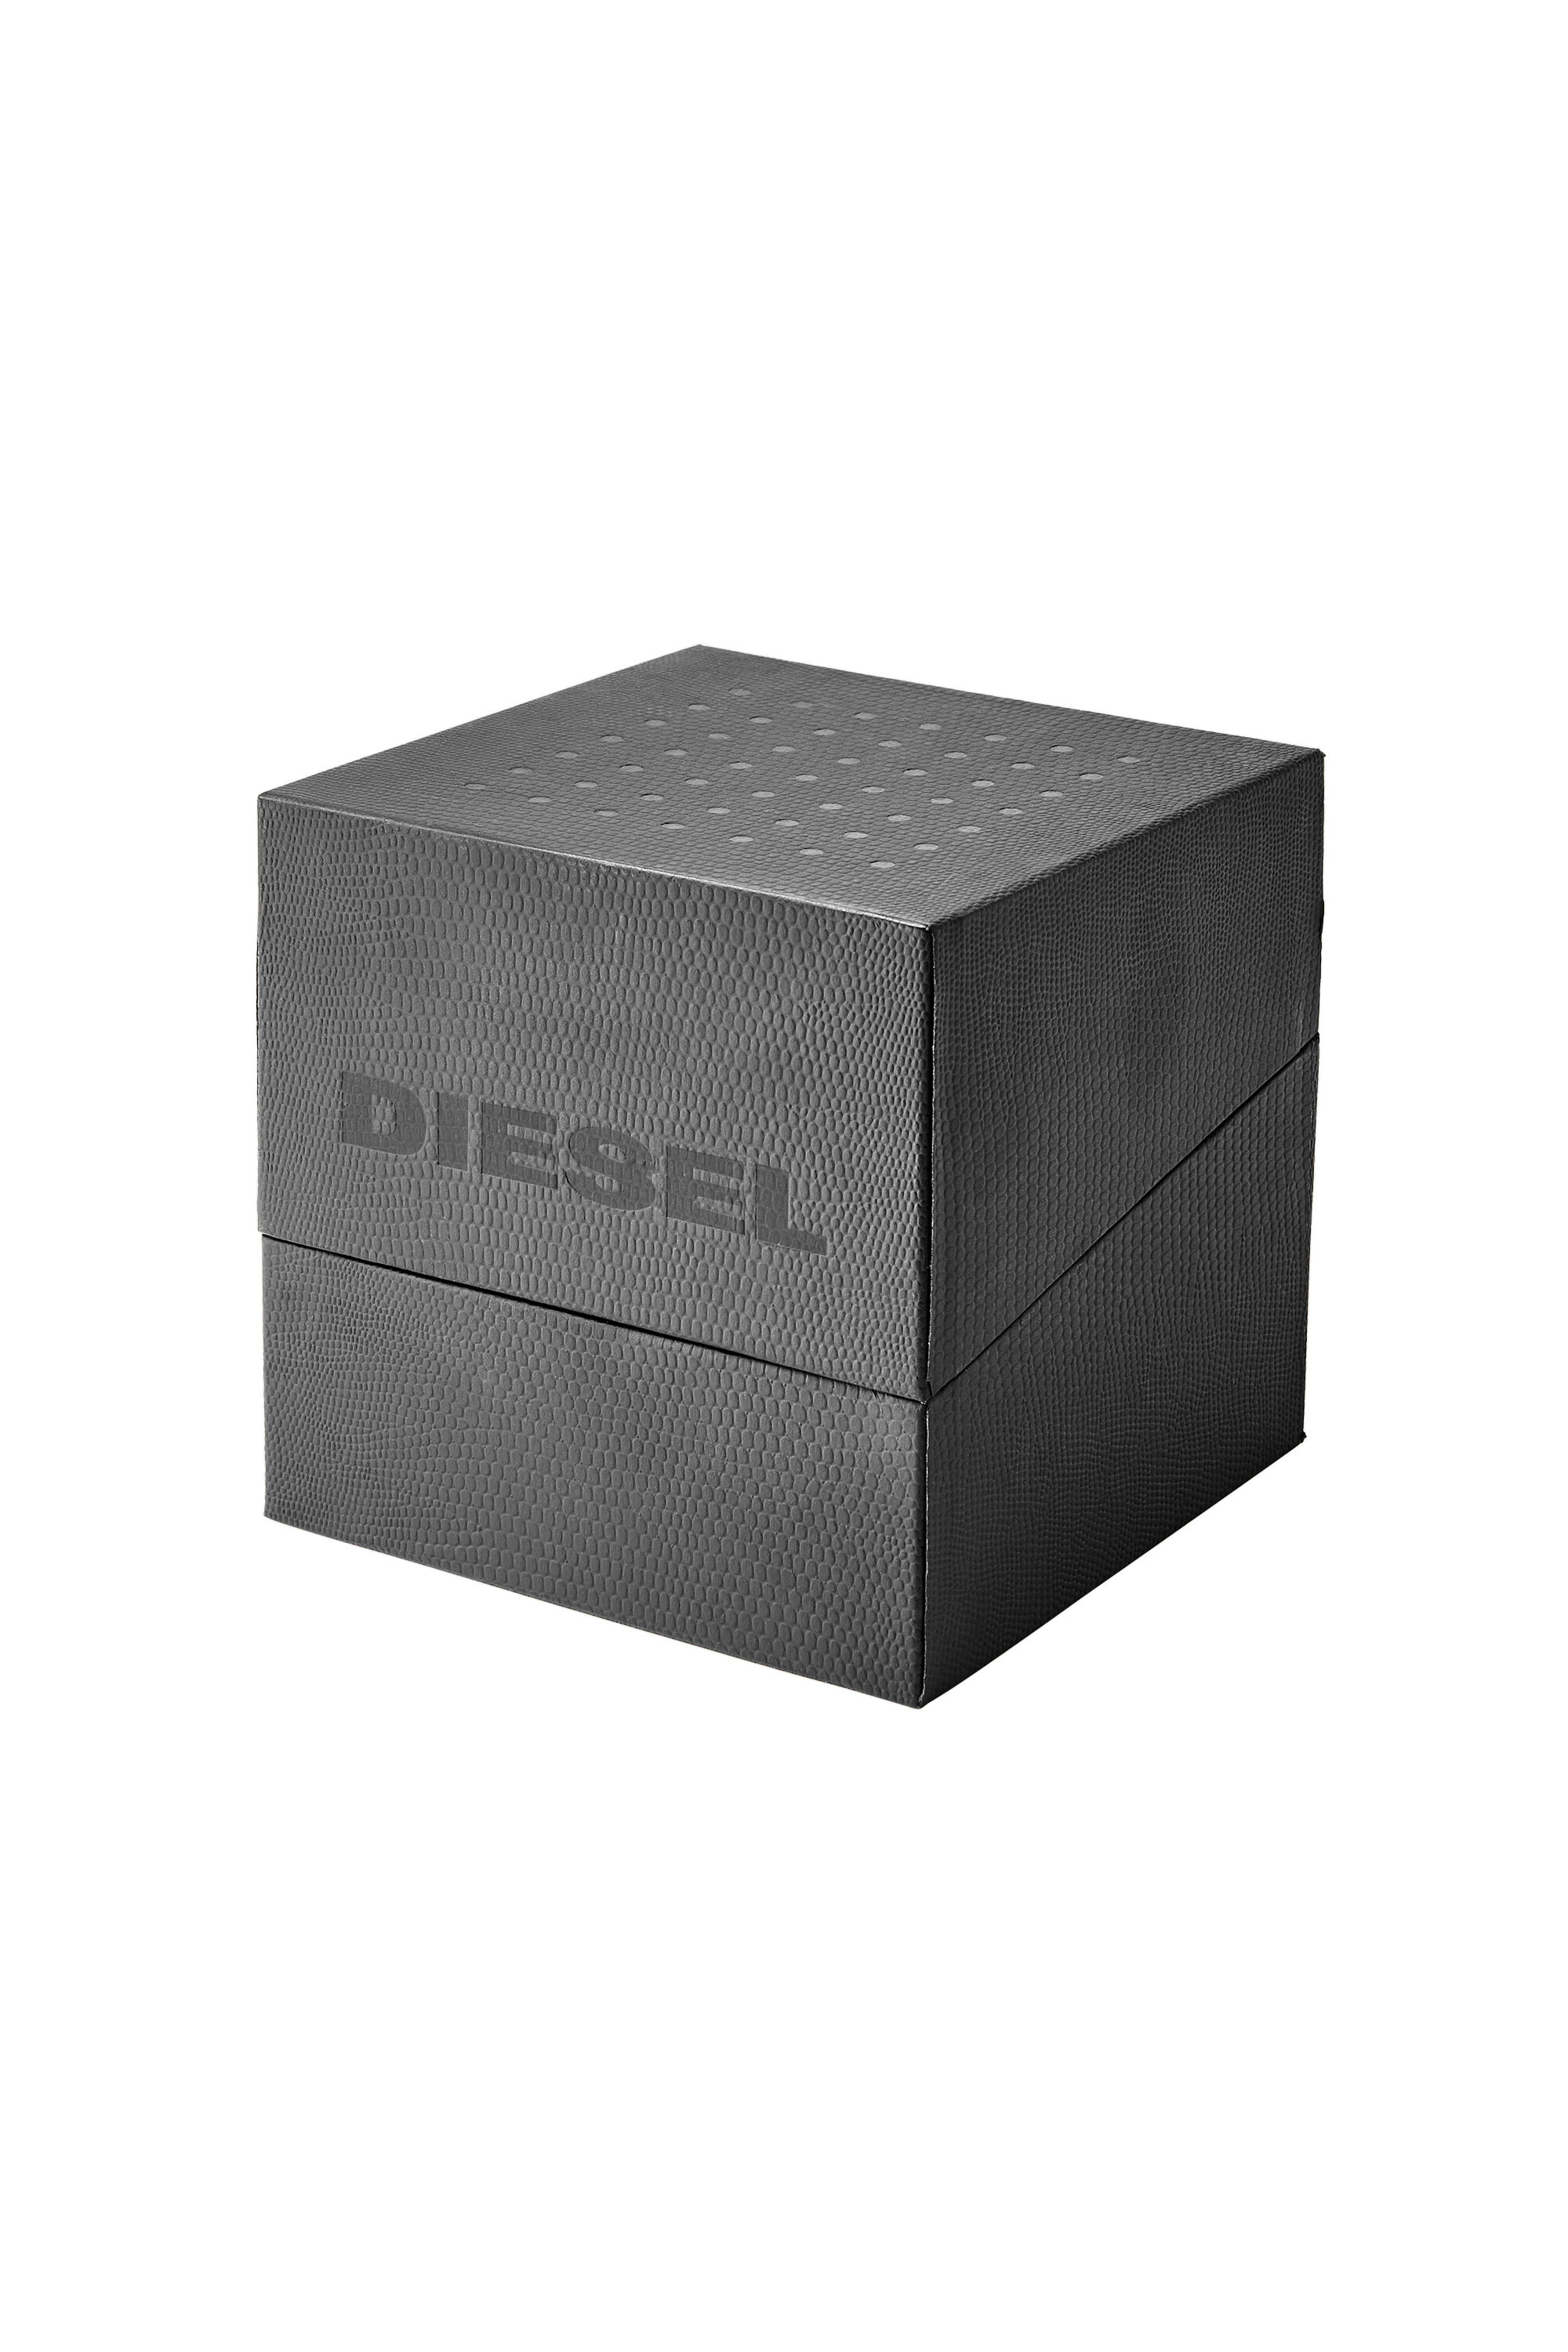 Diesel - DZ7428, Nero - Image 4